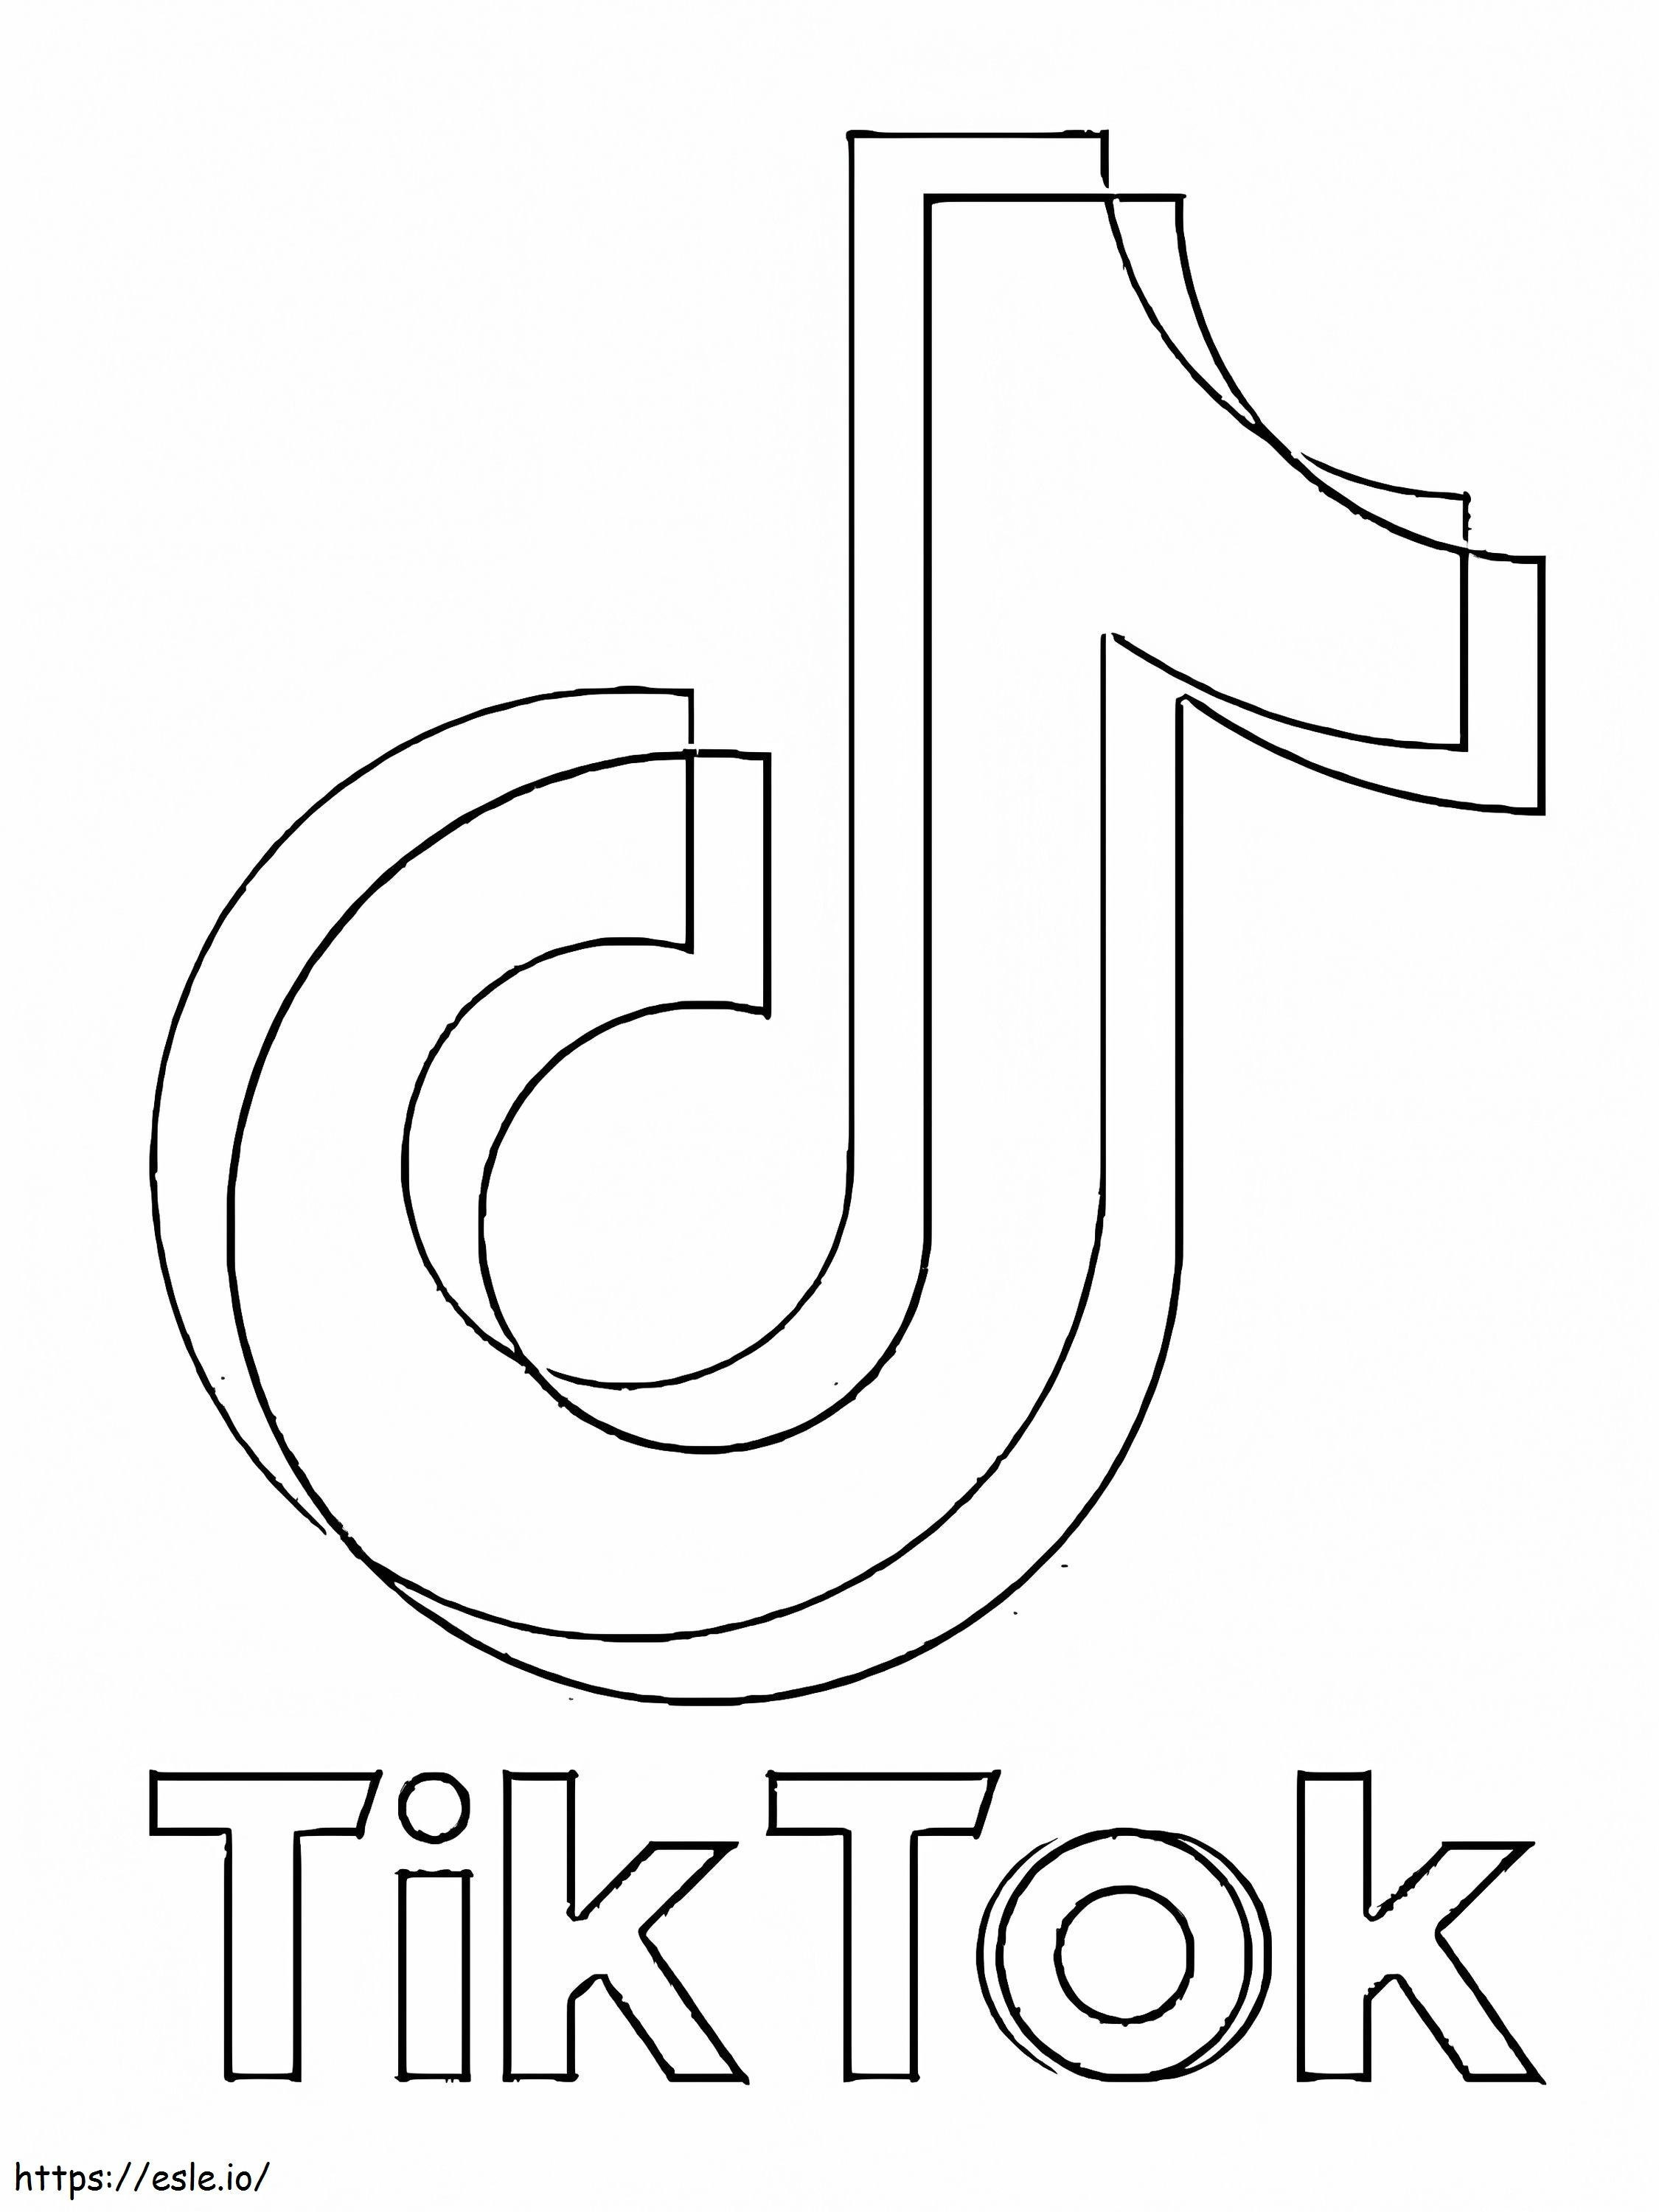 TikTokのロゴ ぬりえ - 塗り絵